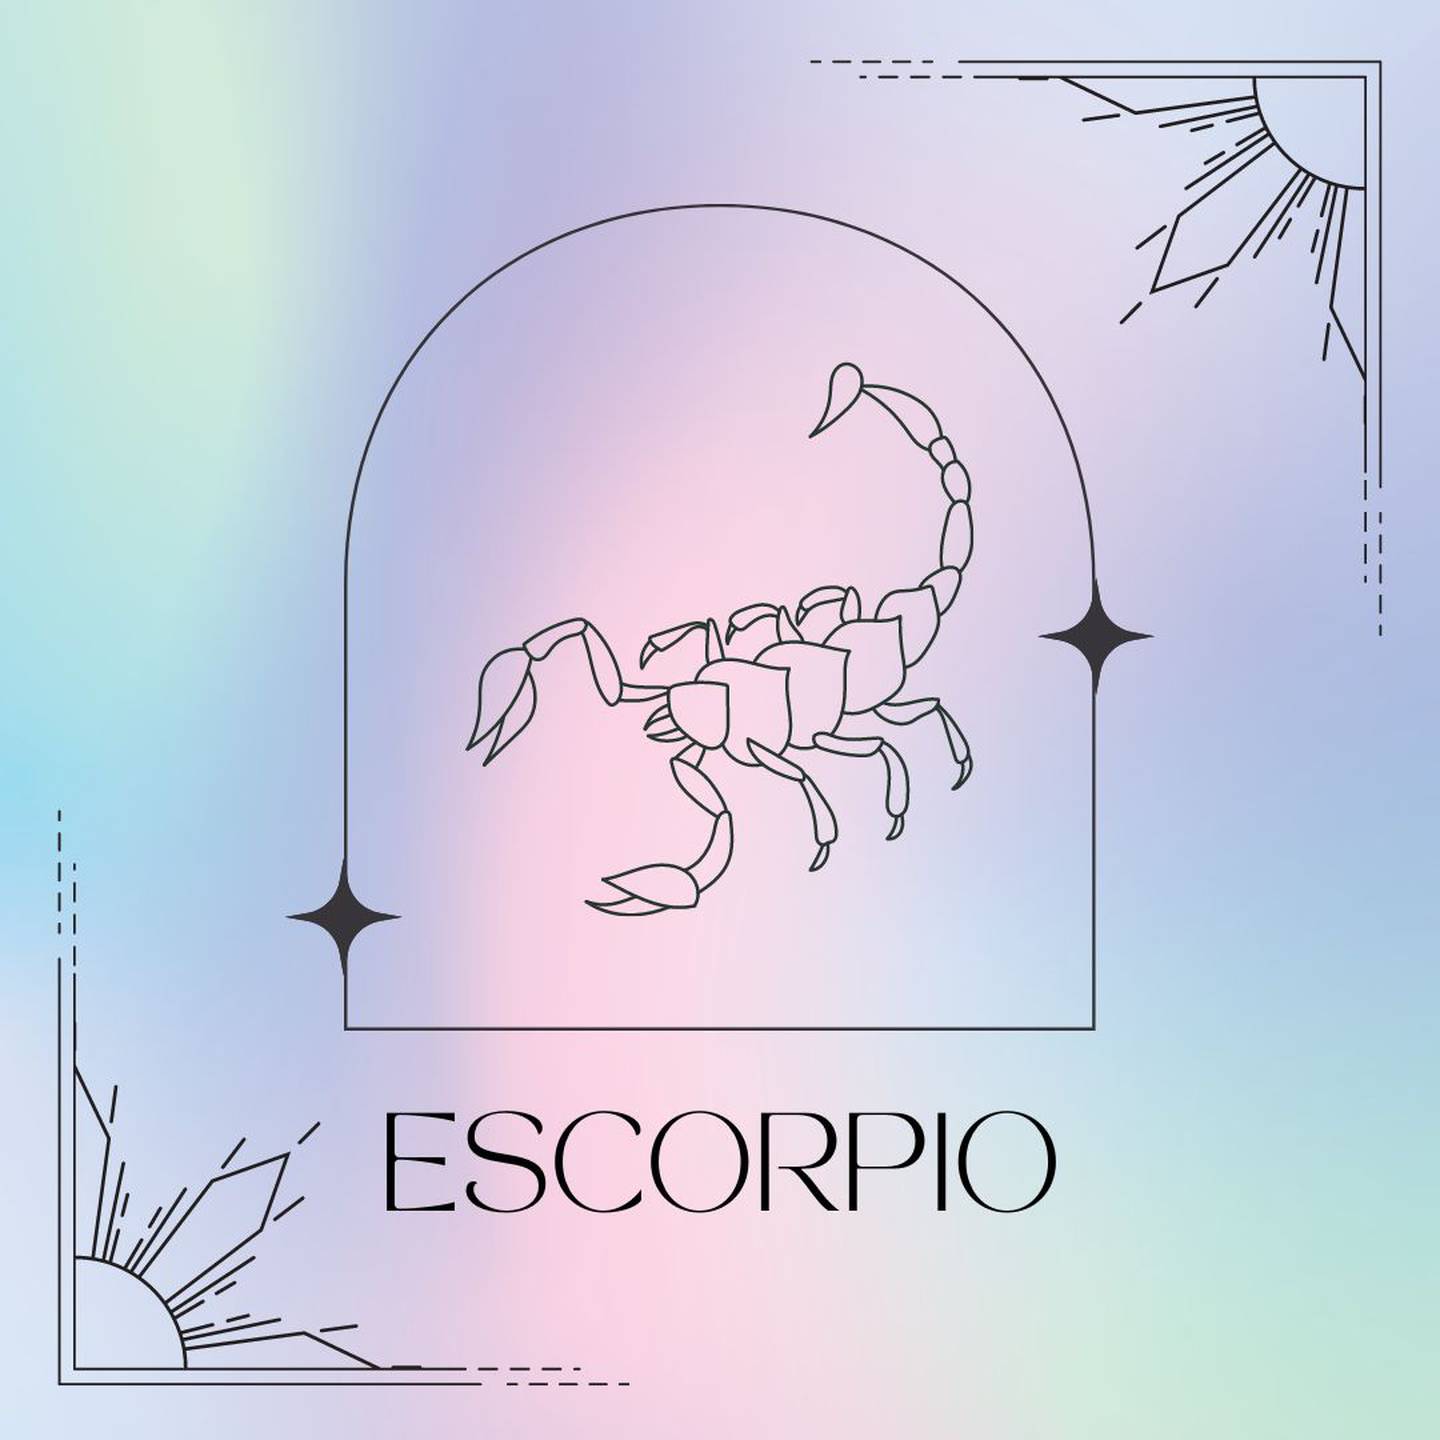 Dibujado en negro, el símbolo de Escorpio aparece enmarcado sobre un fondo de suaves colores pastel.